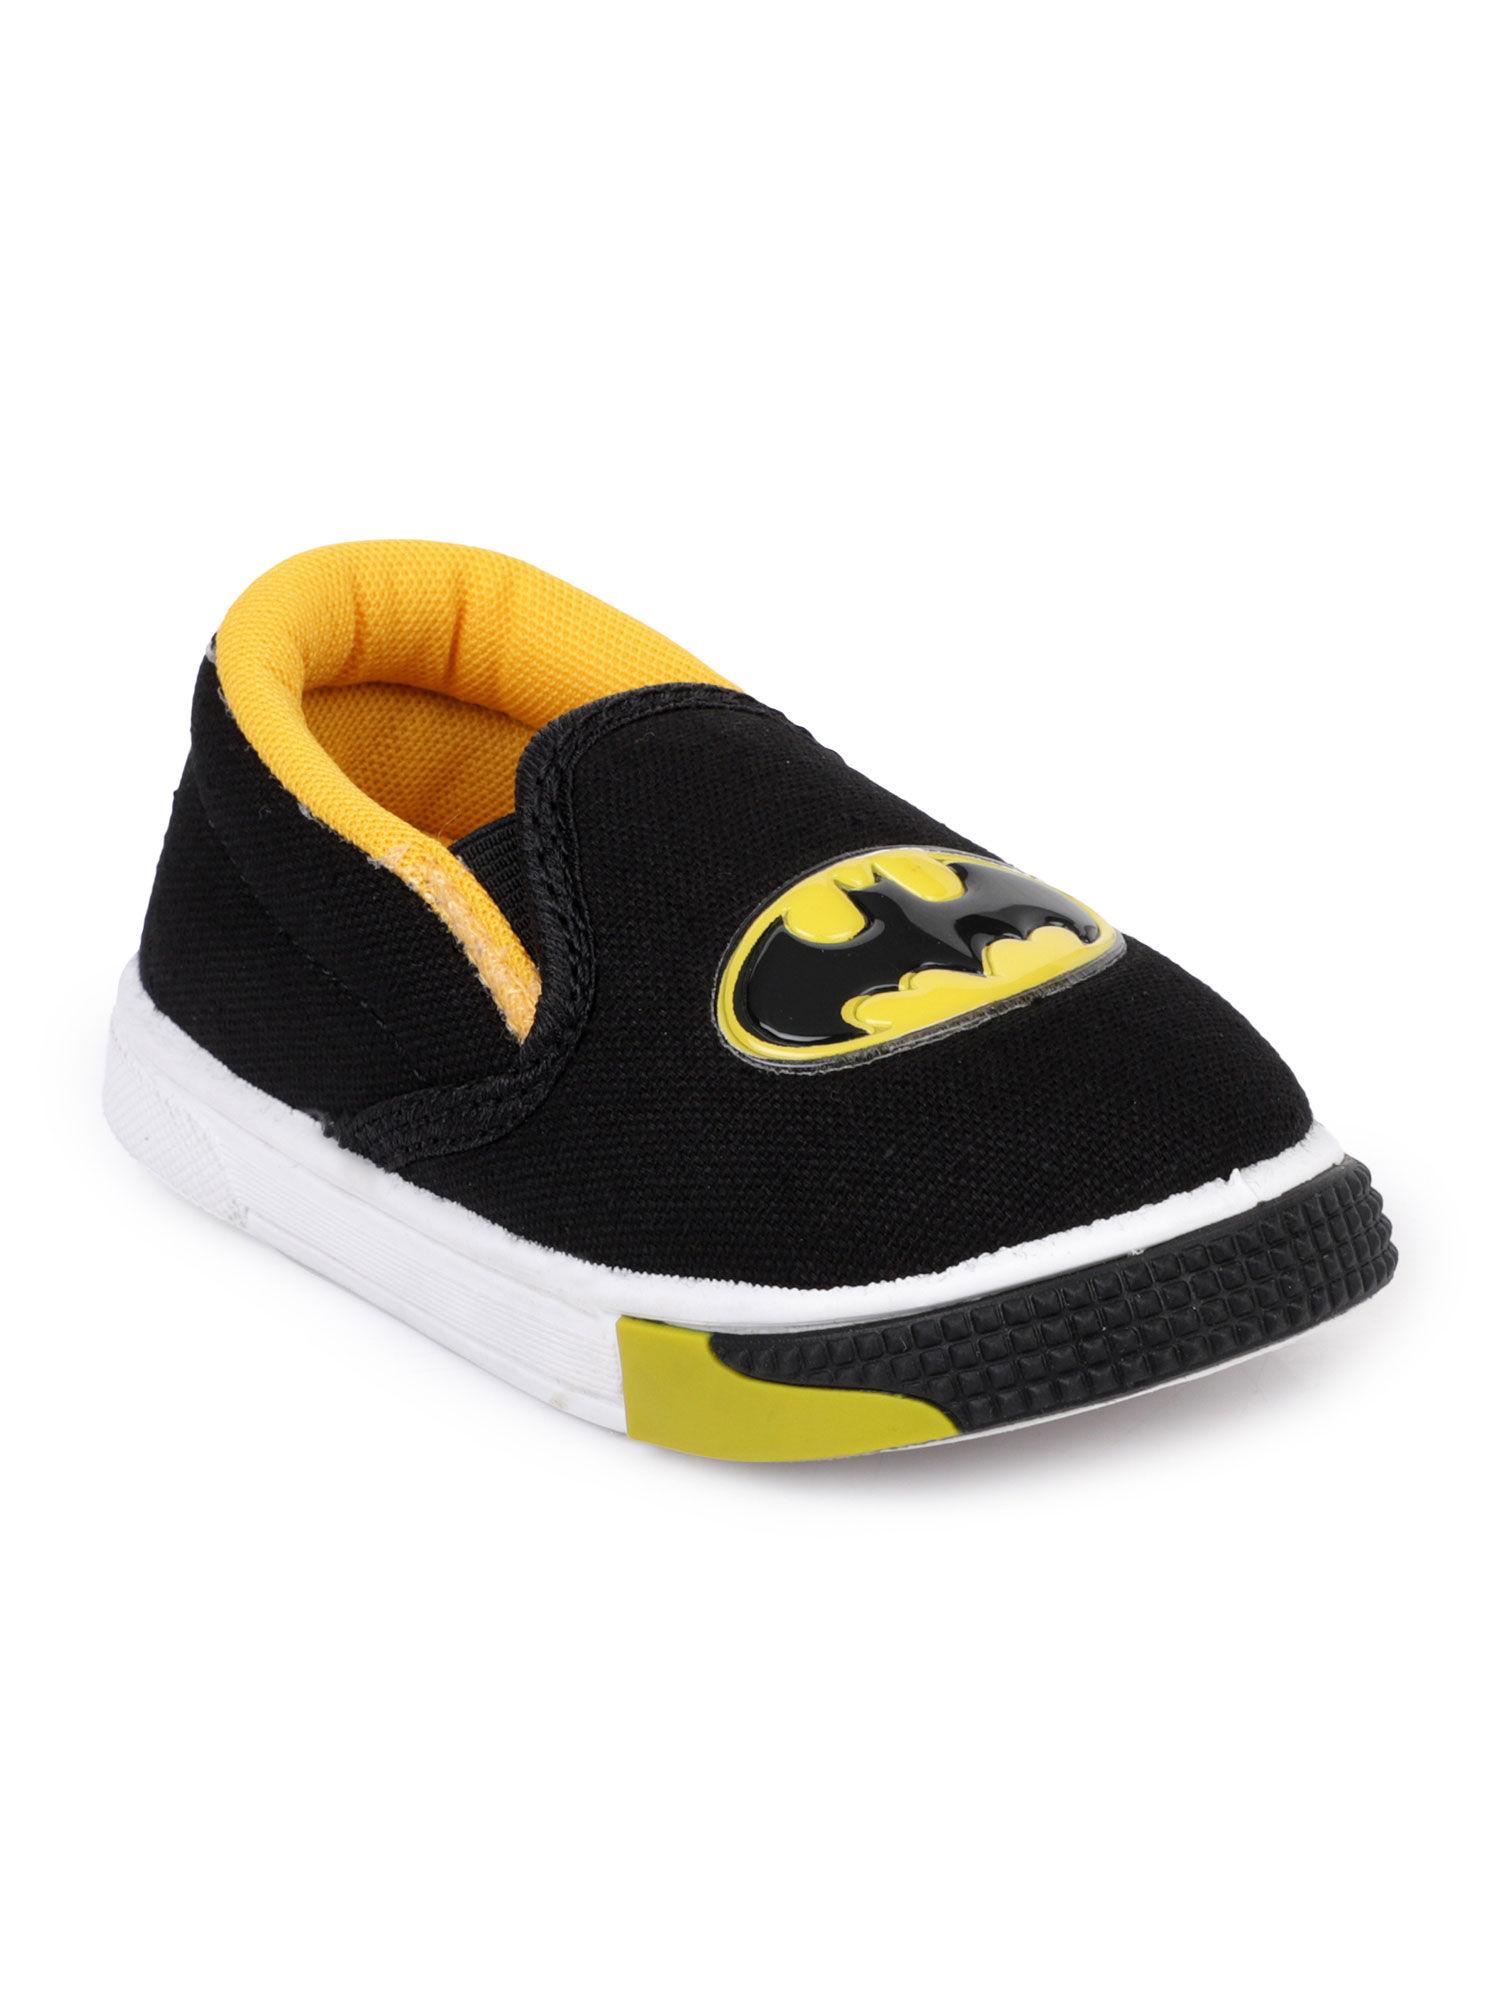 black color batman printed shoes for boys